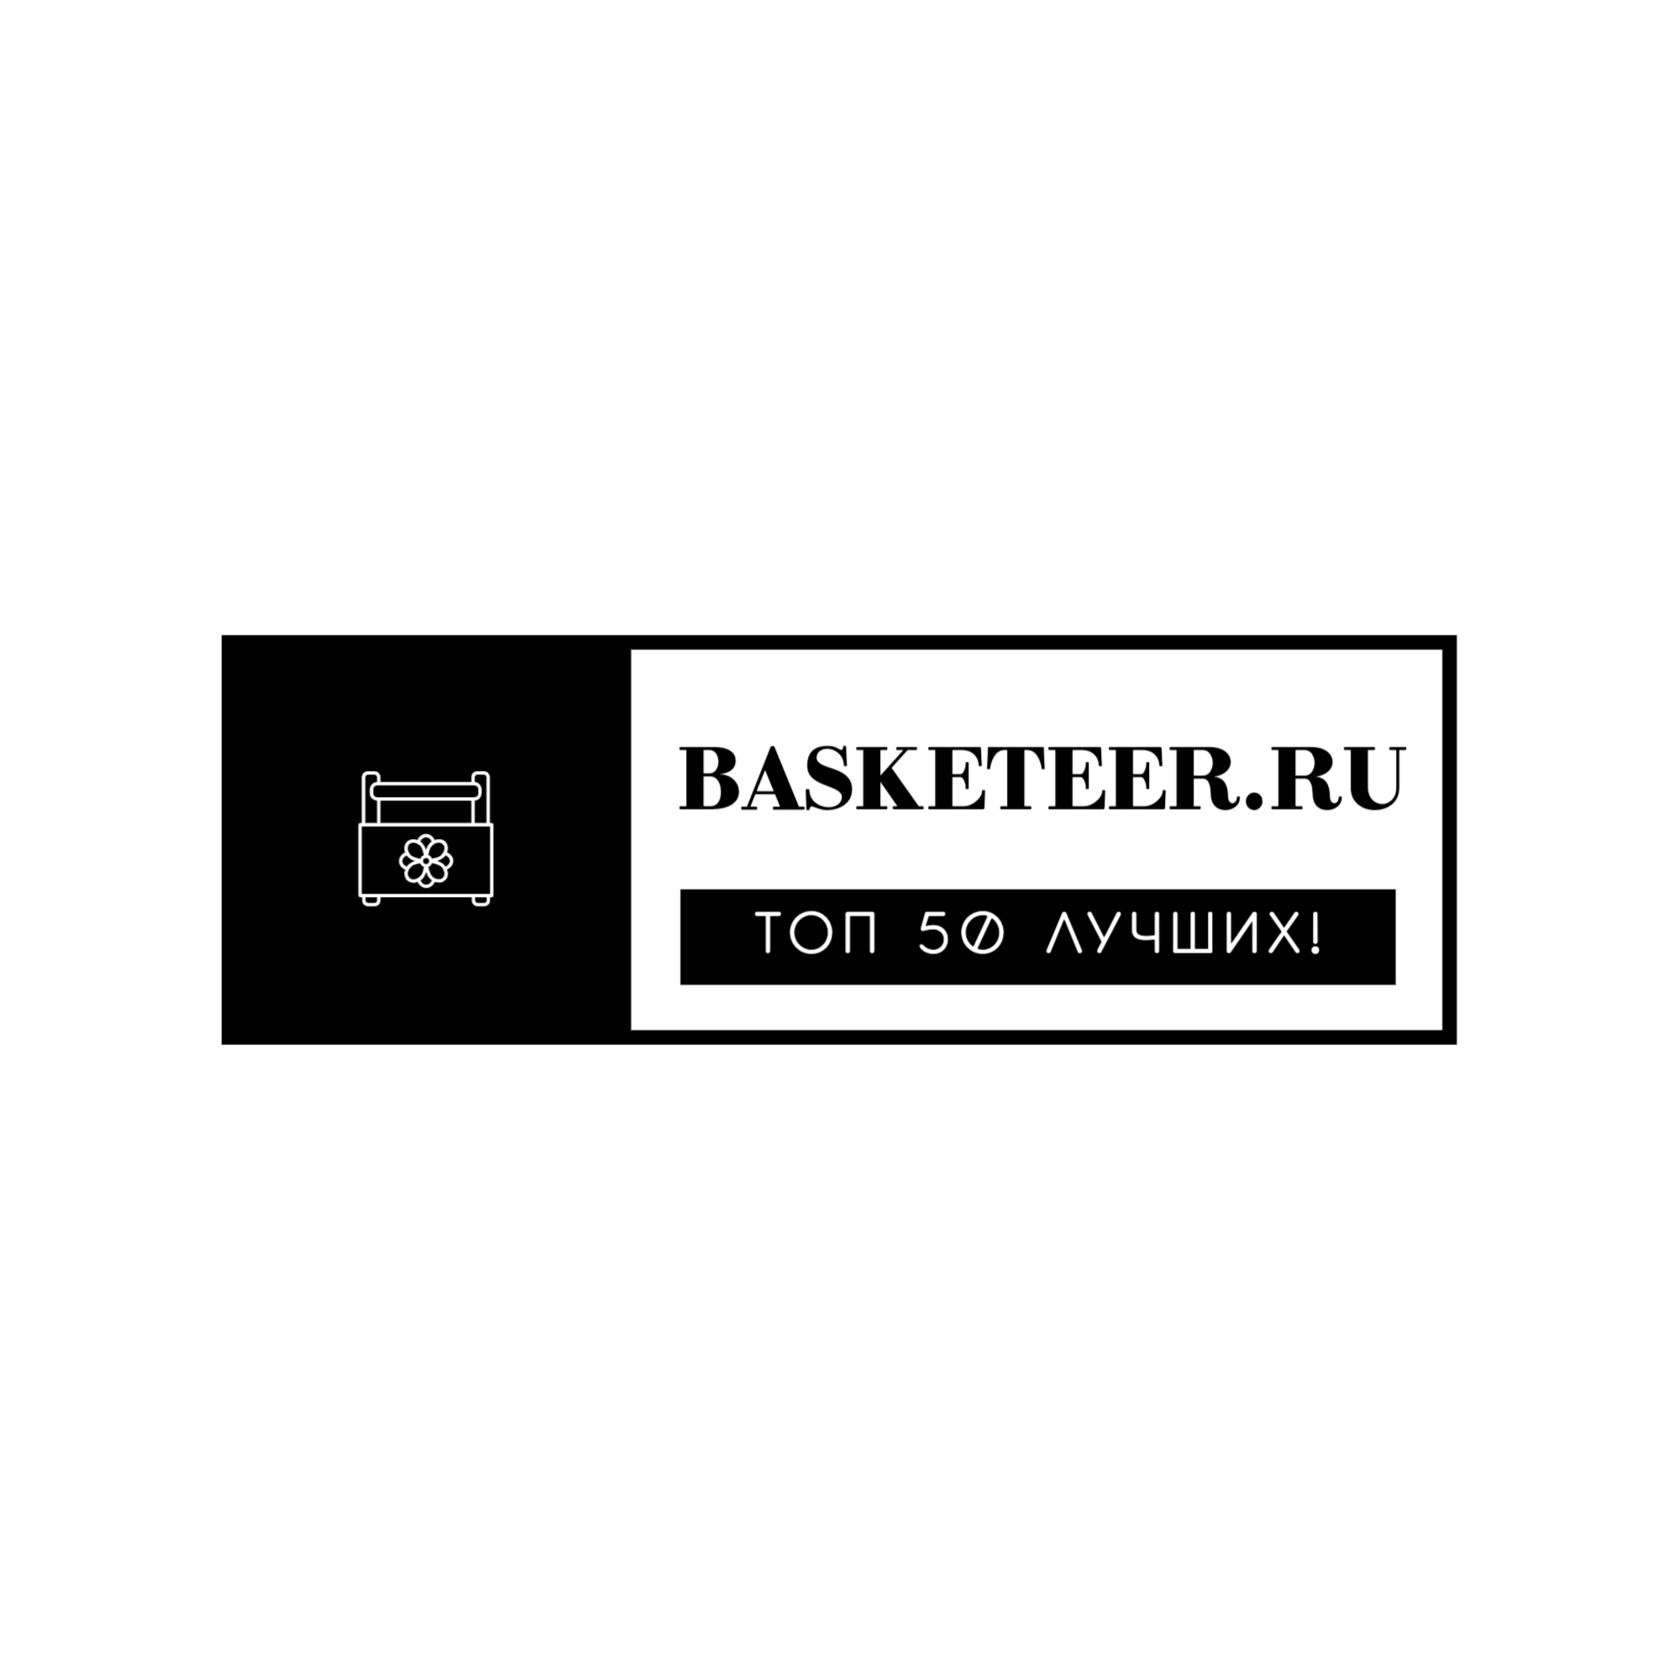 Basketeer.ru